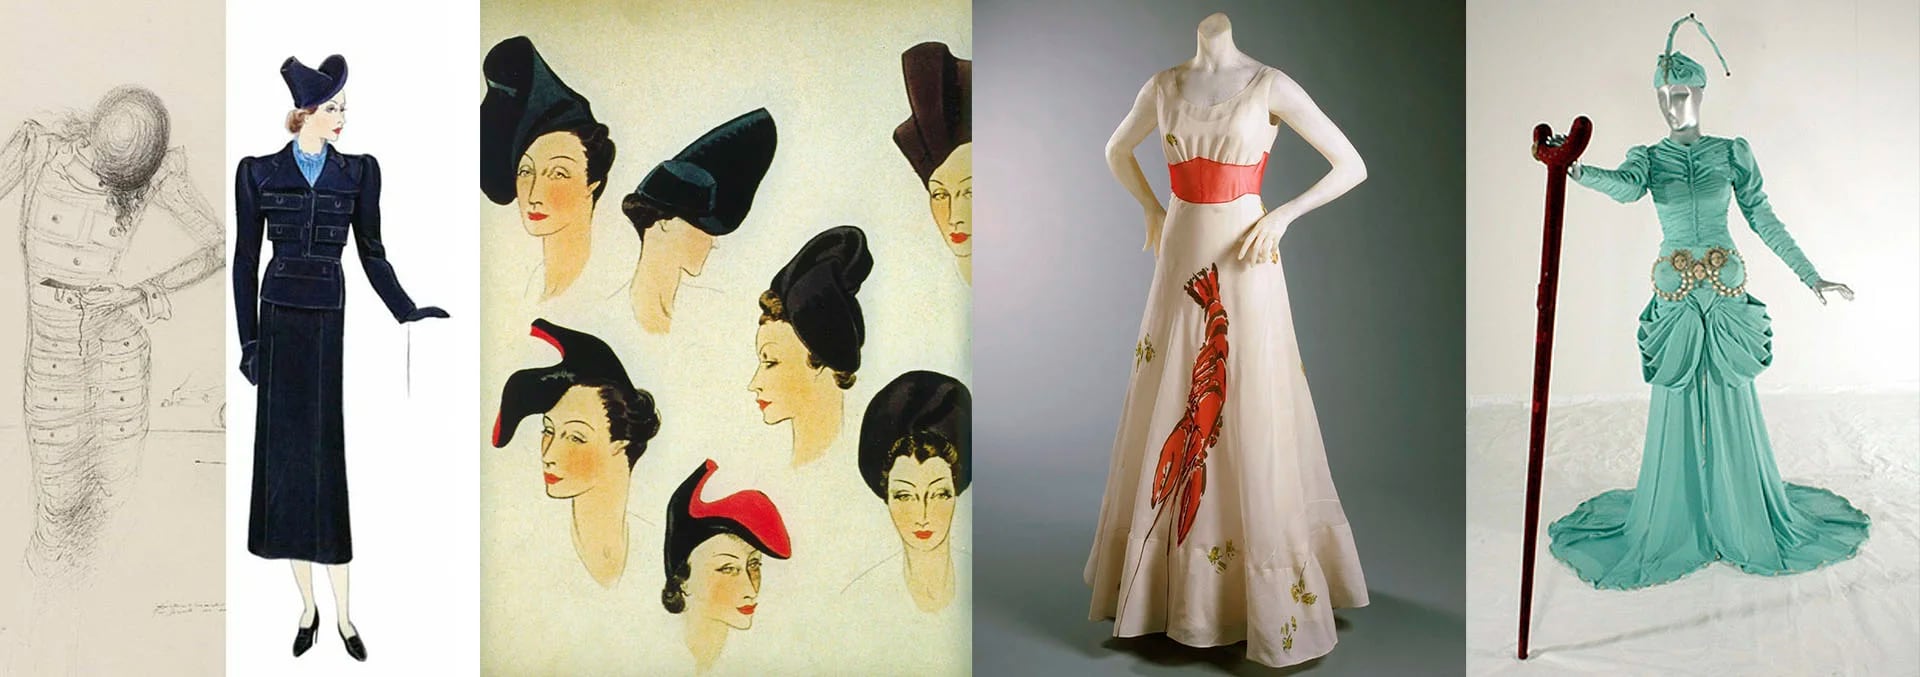 Tres trabajos con Schiaparelli y el vestido para 2045 con Dior